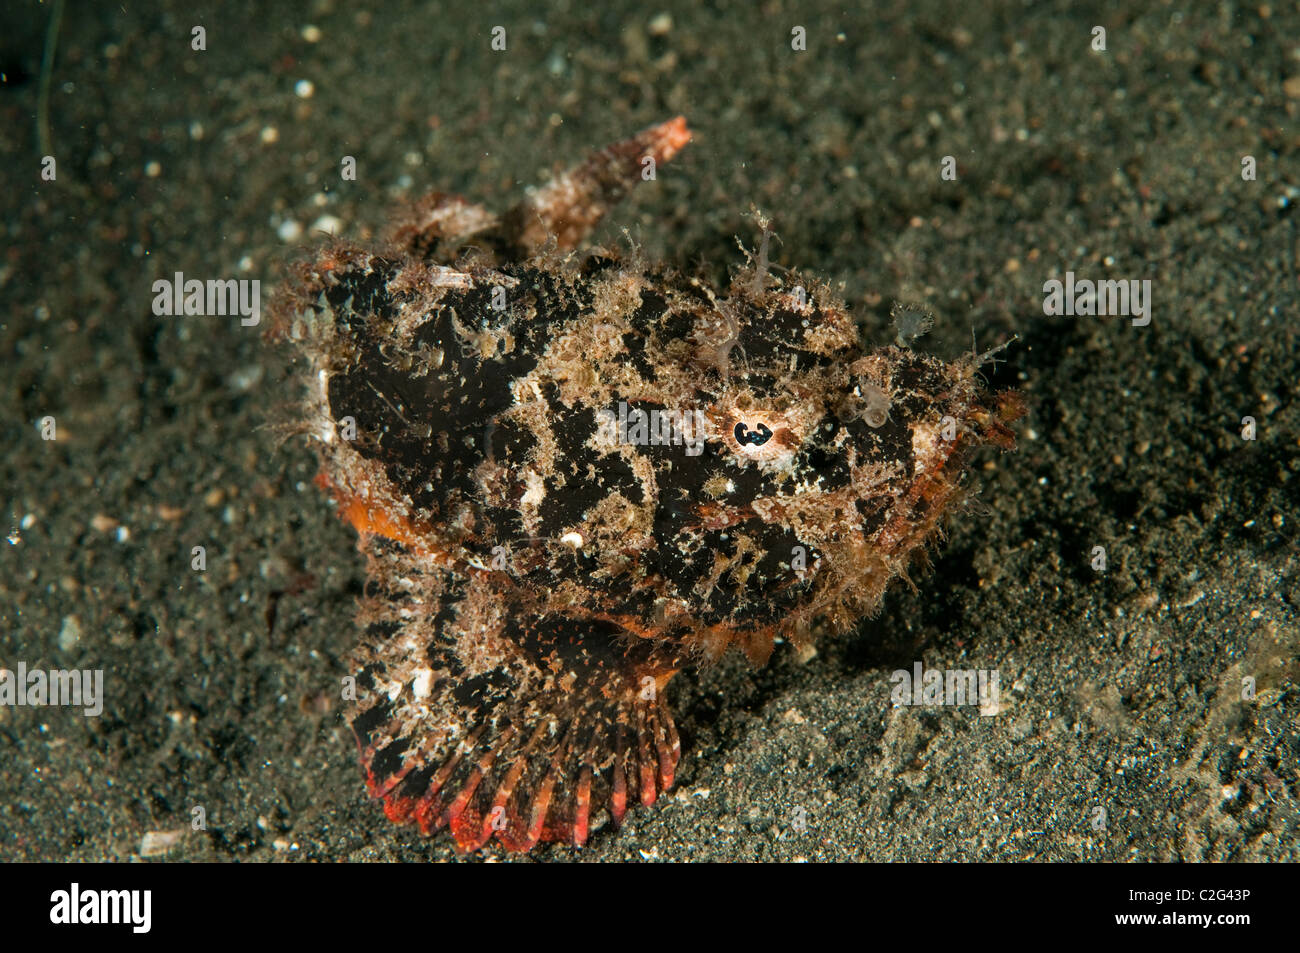 Bandtail scorpionfish, Scorpaenopsis neglecta, Sulawesi Indonesia. Stock Photo